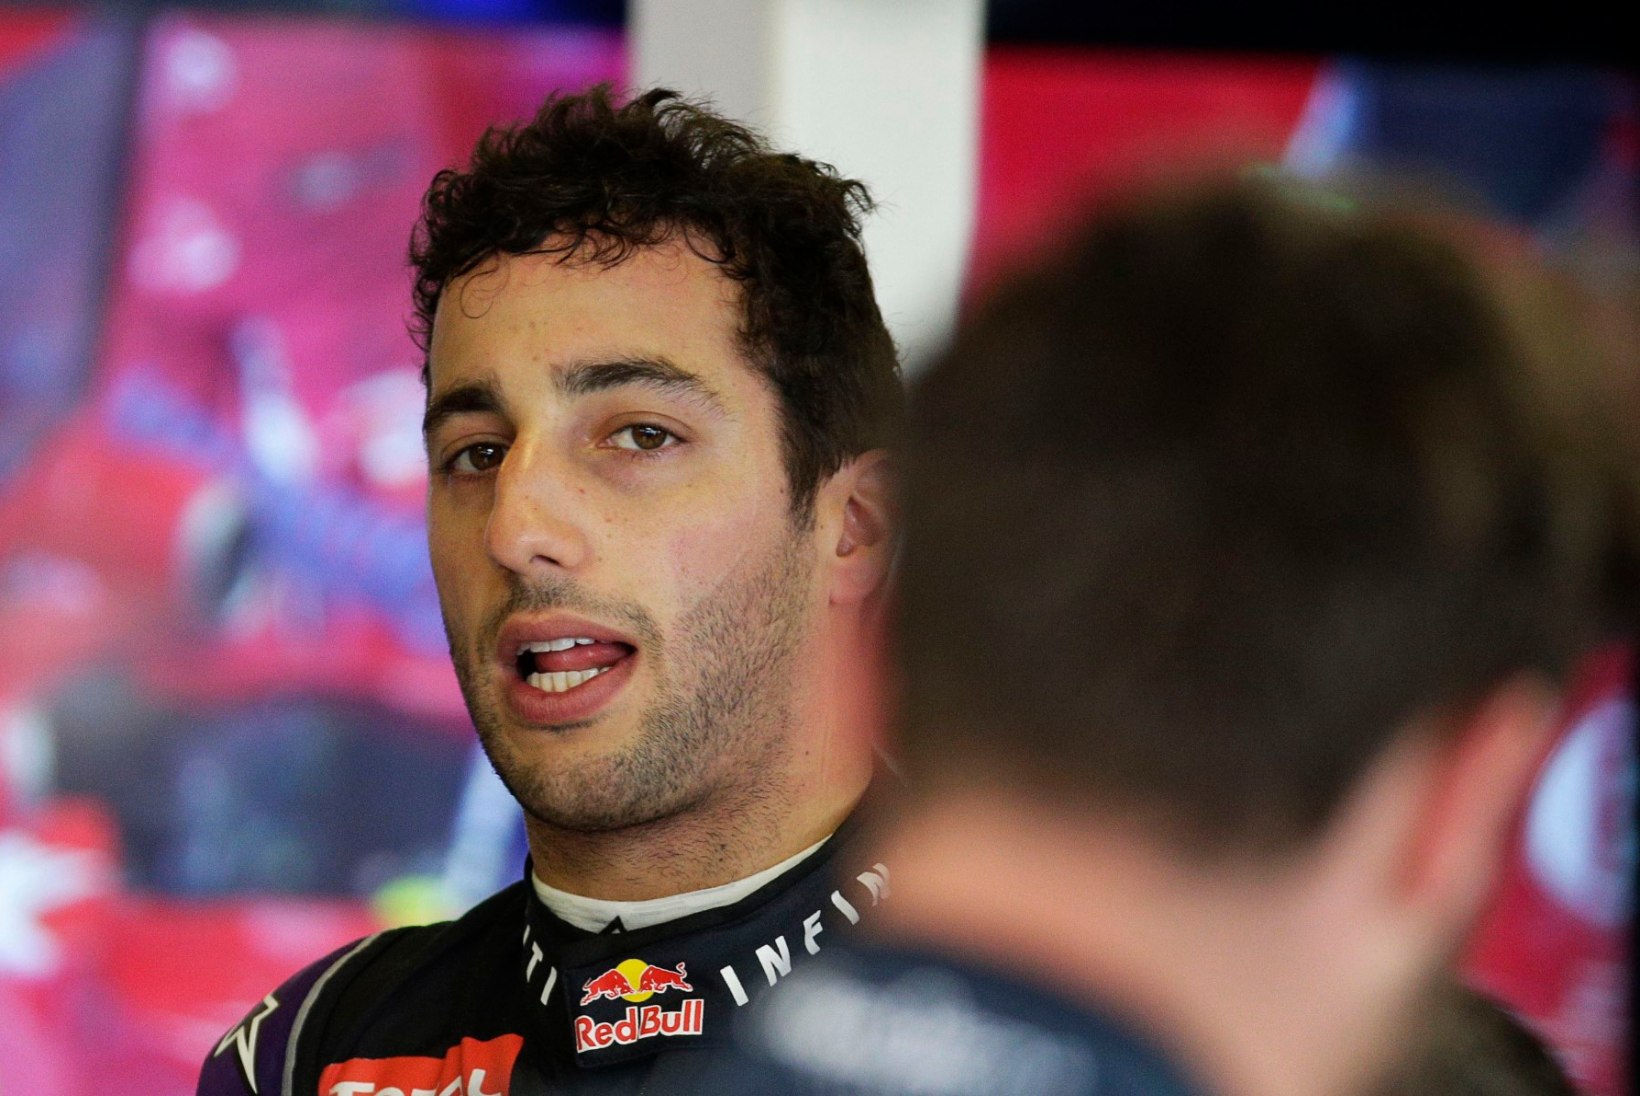 Red Bull võib F1-sarjast suu puhtaks pühkida